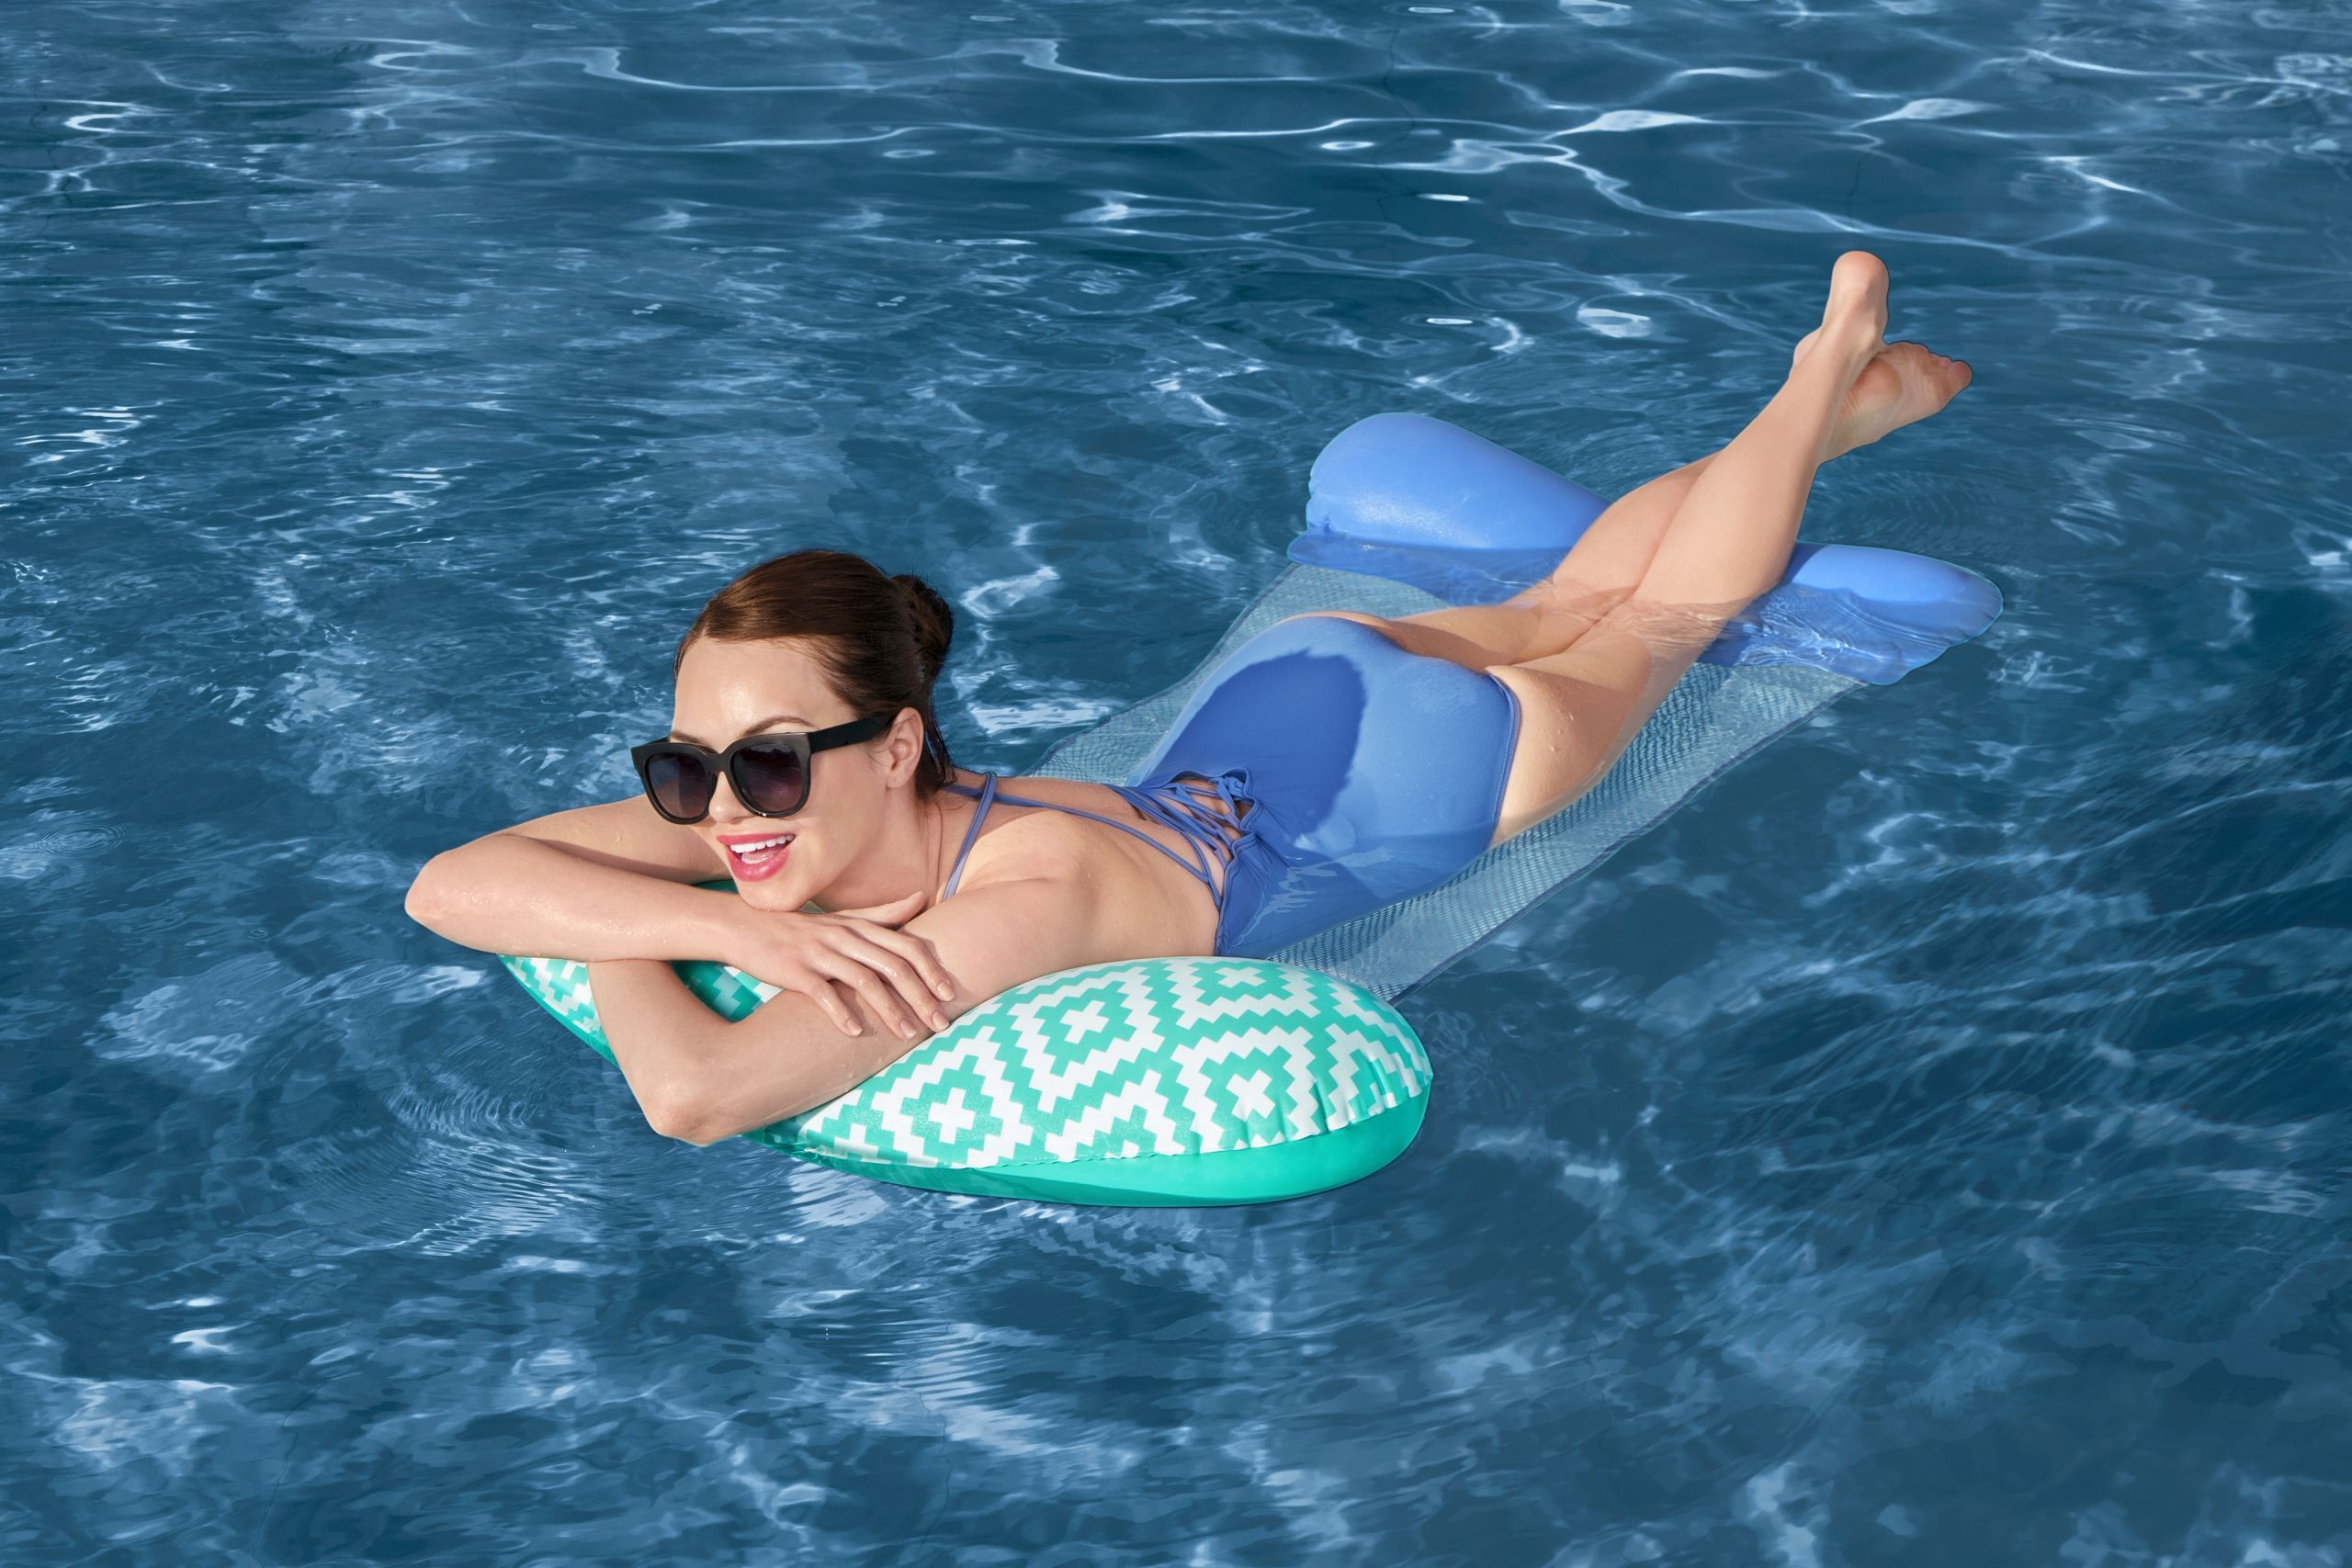 Comfort Plush™ Hamac pour piscine 145 x 87 cm